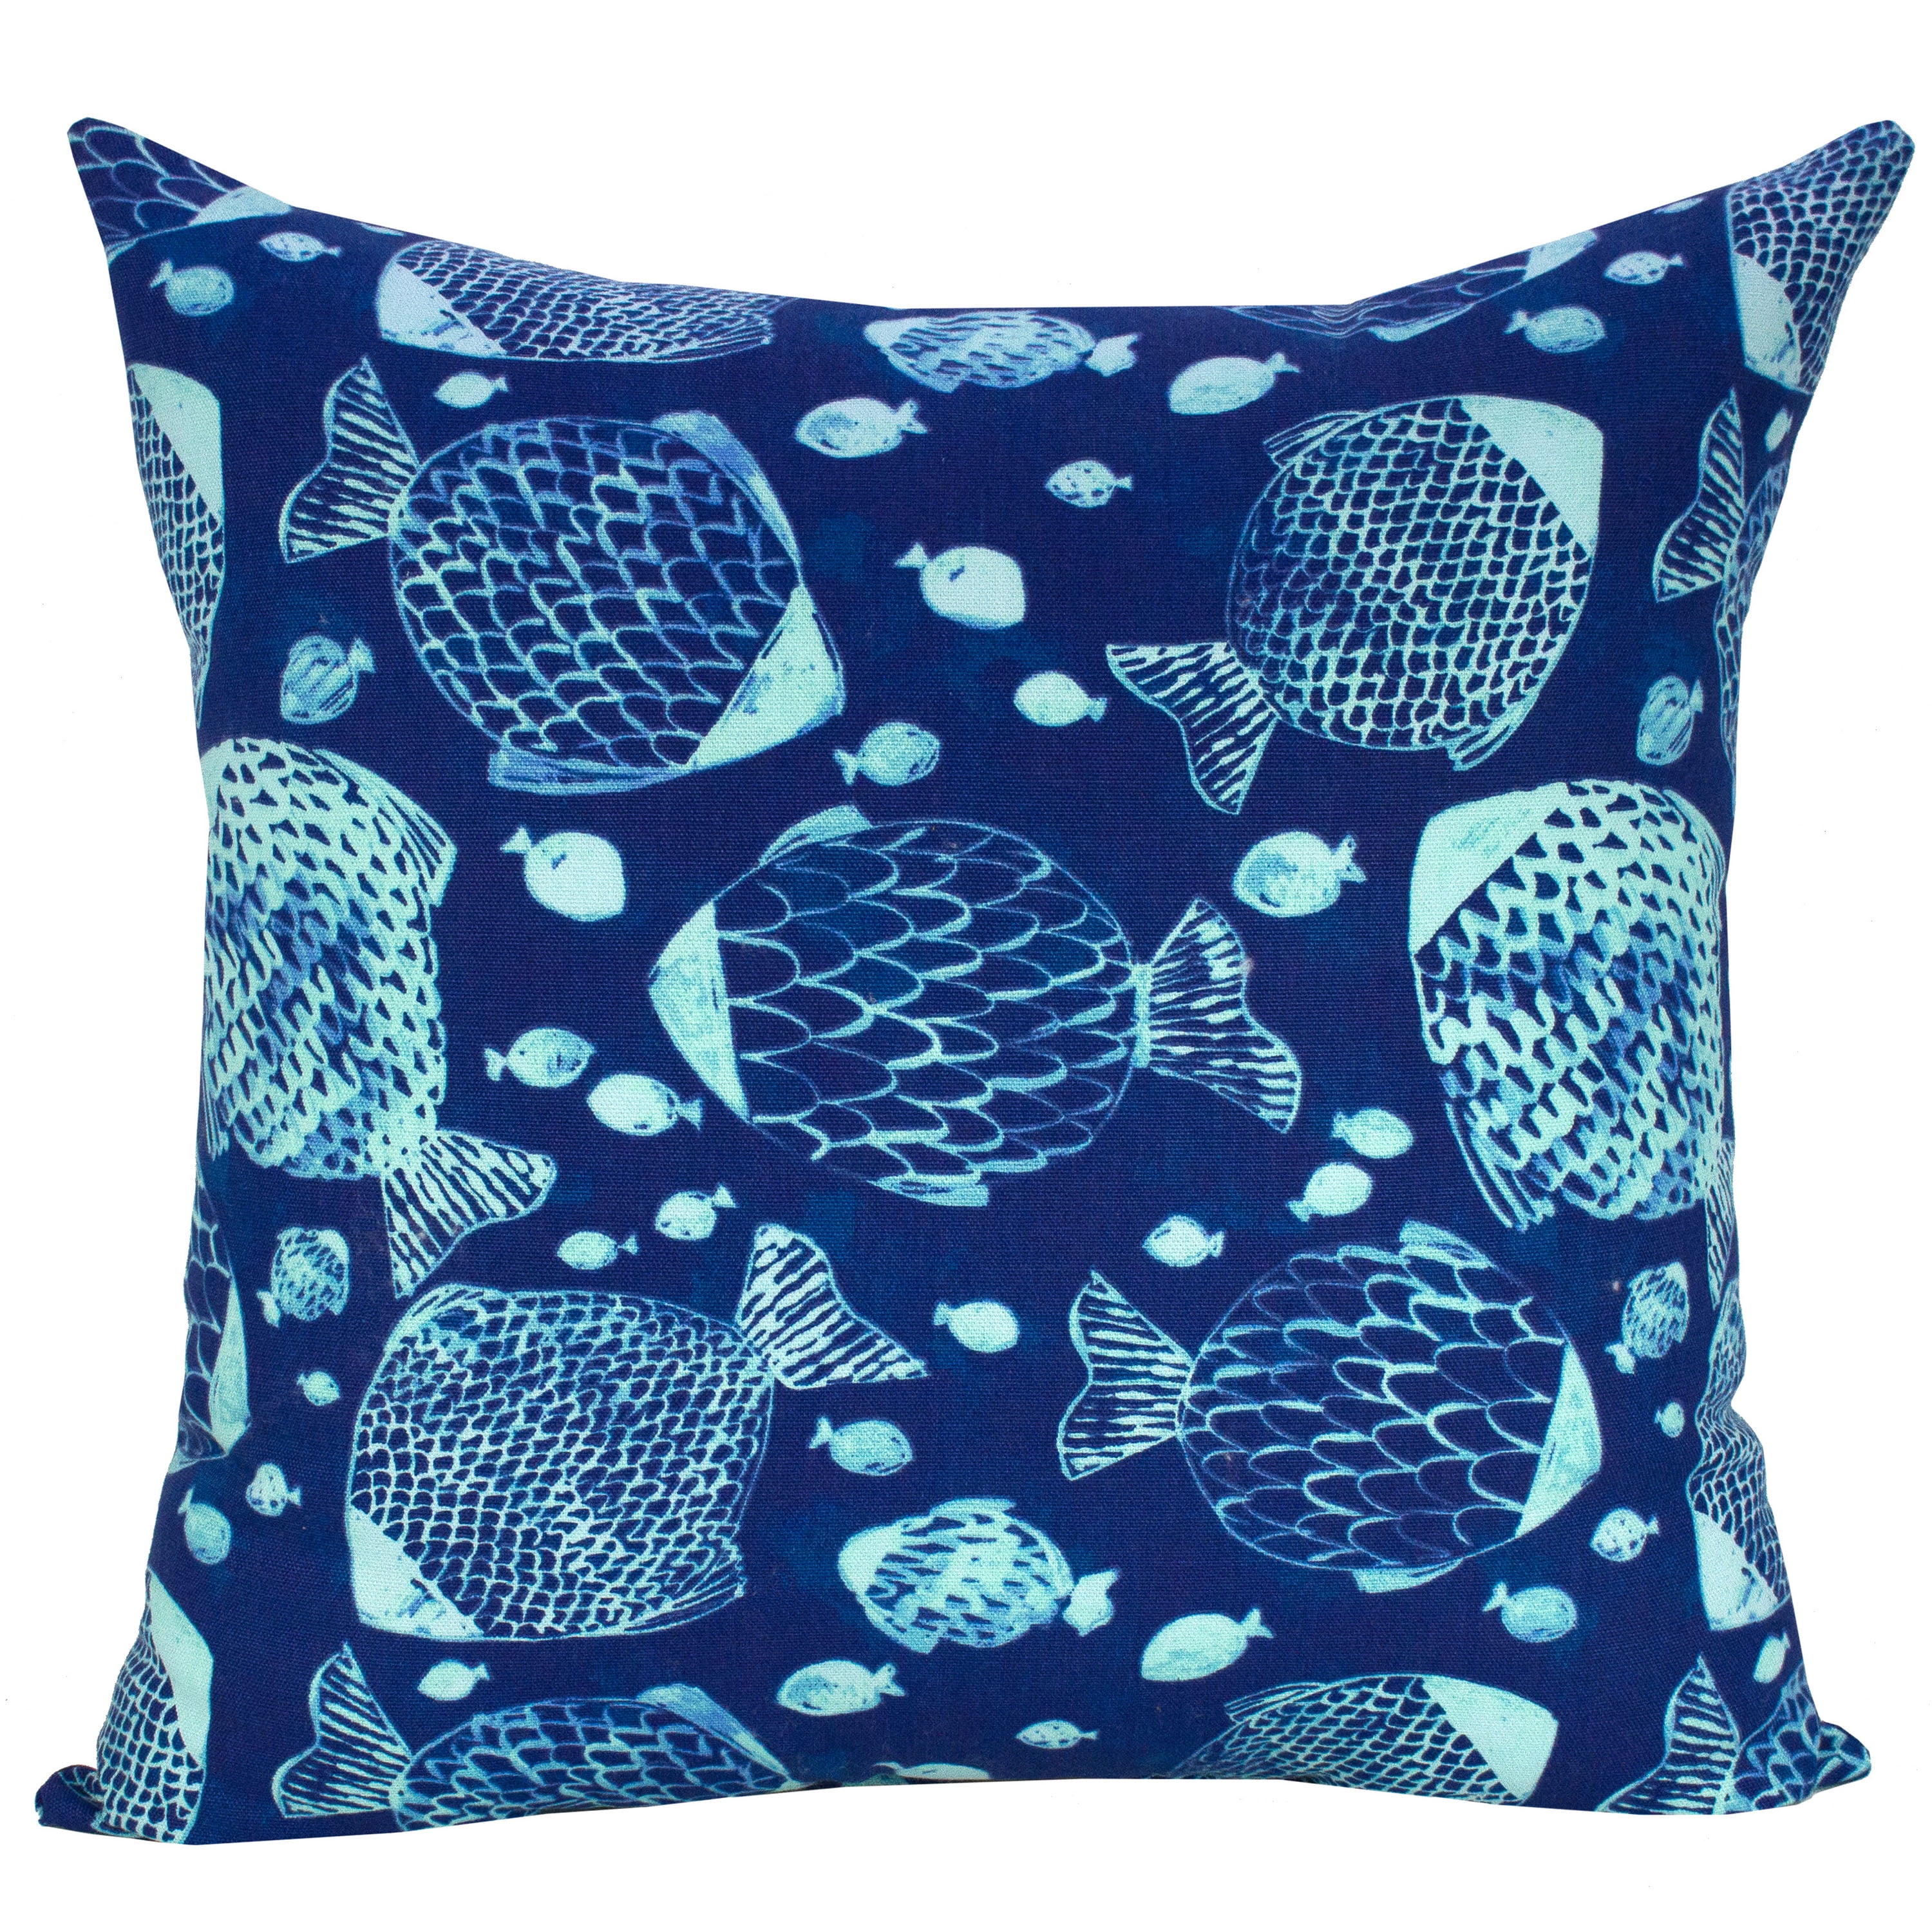 Cotton Fabric - Novelty Fabric - Gnomesville Fish and Fishing Hooks Light  Blue - 4my3boyz Fabric